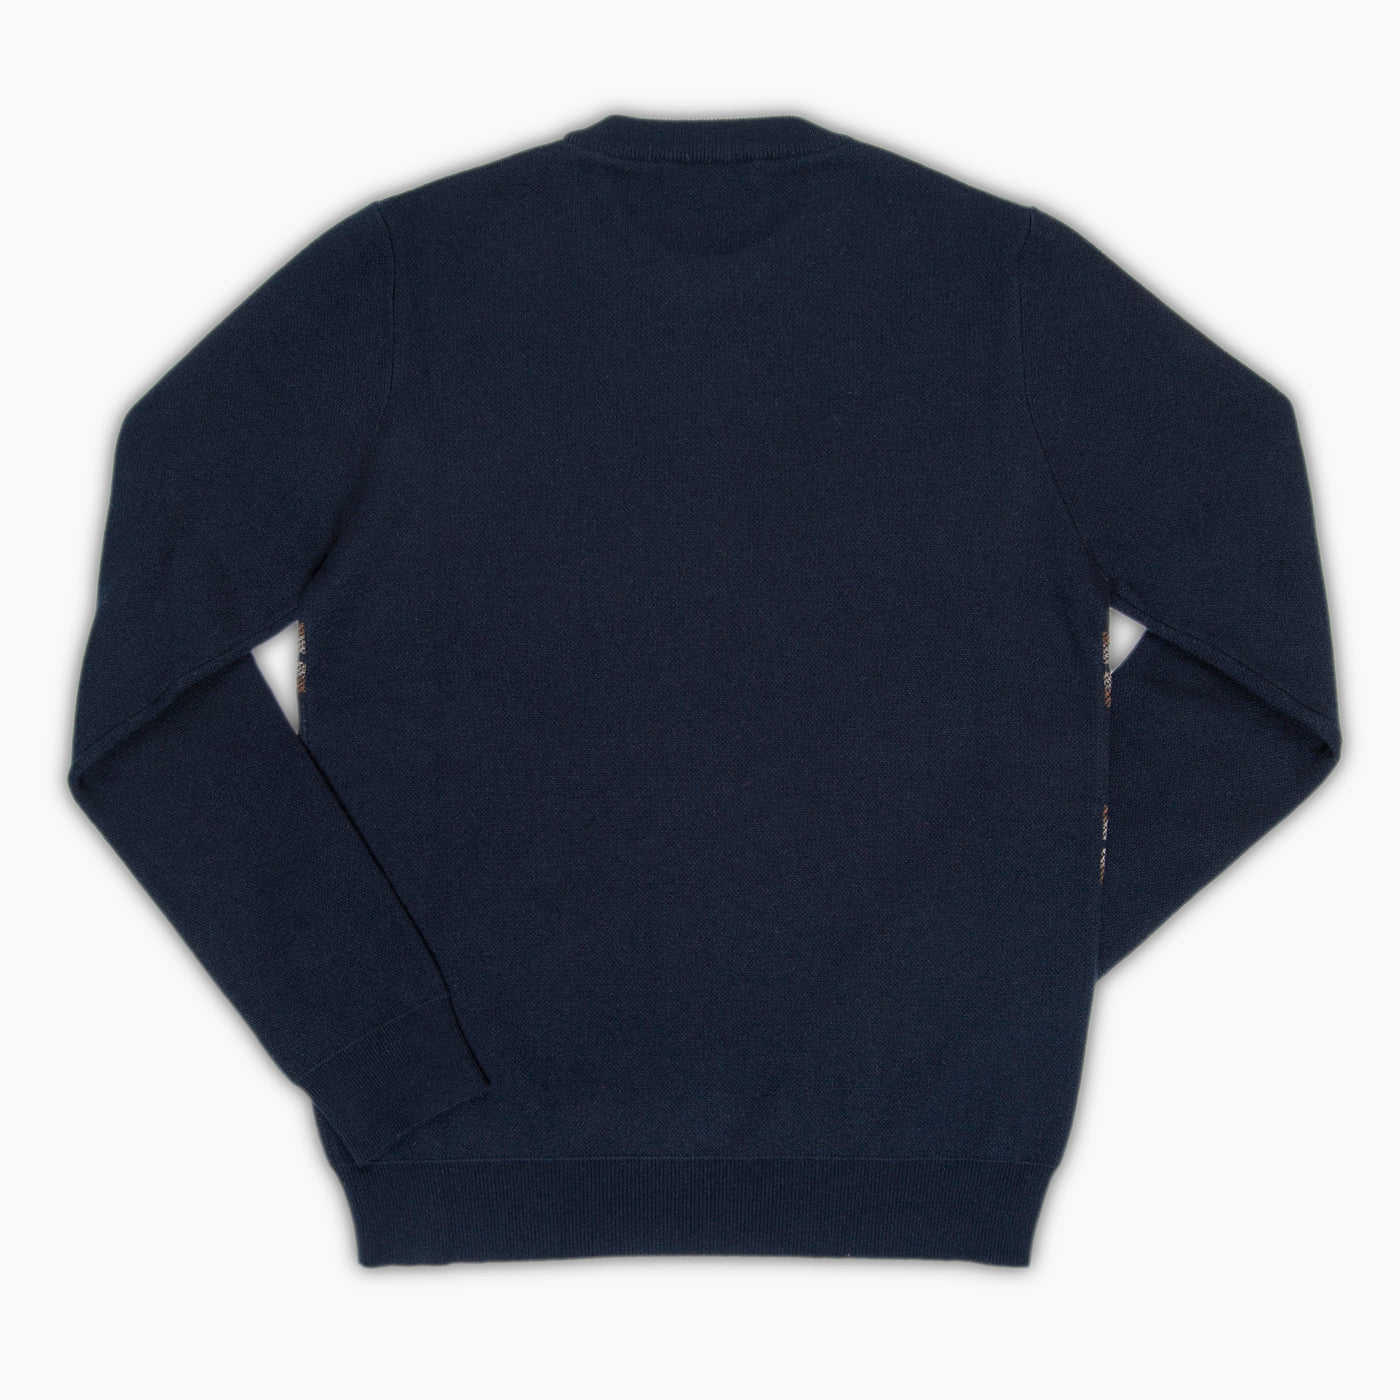 Tazio cashmere crewneck sweater